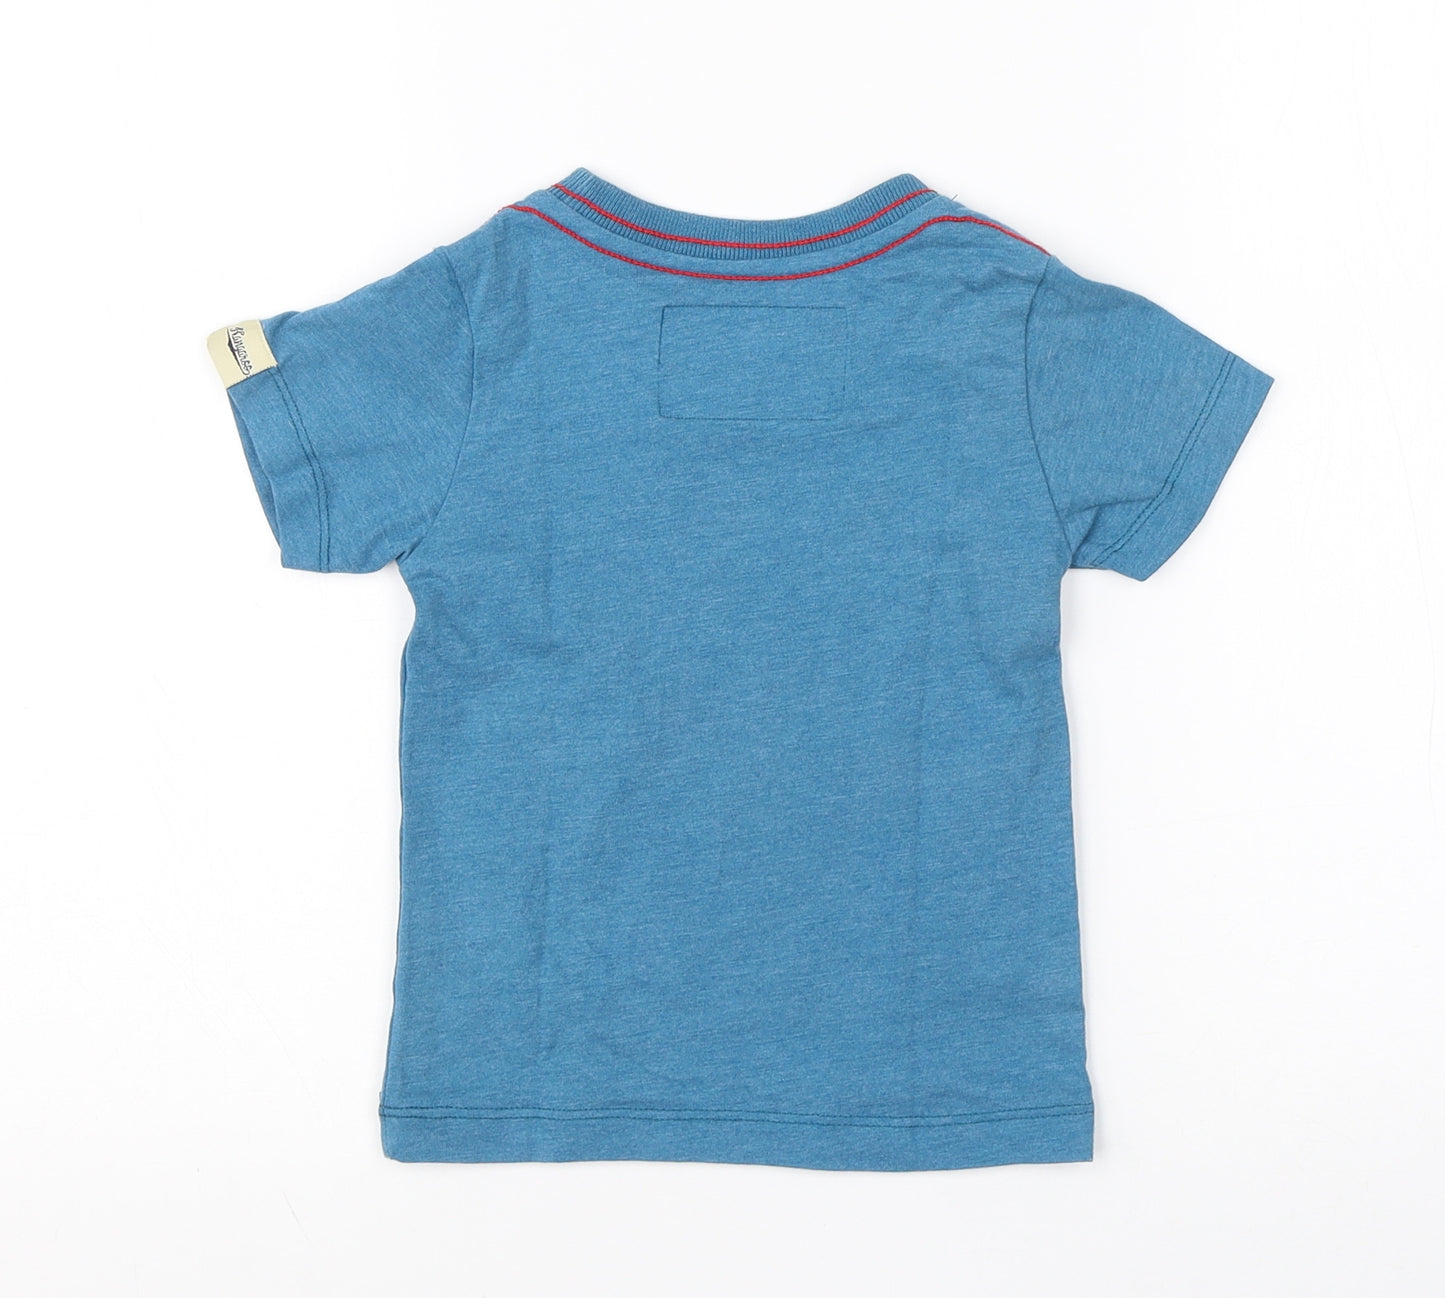 Kangaroo Boys Blue  Cotton Basic T-Shirt Size S Round Neck